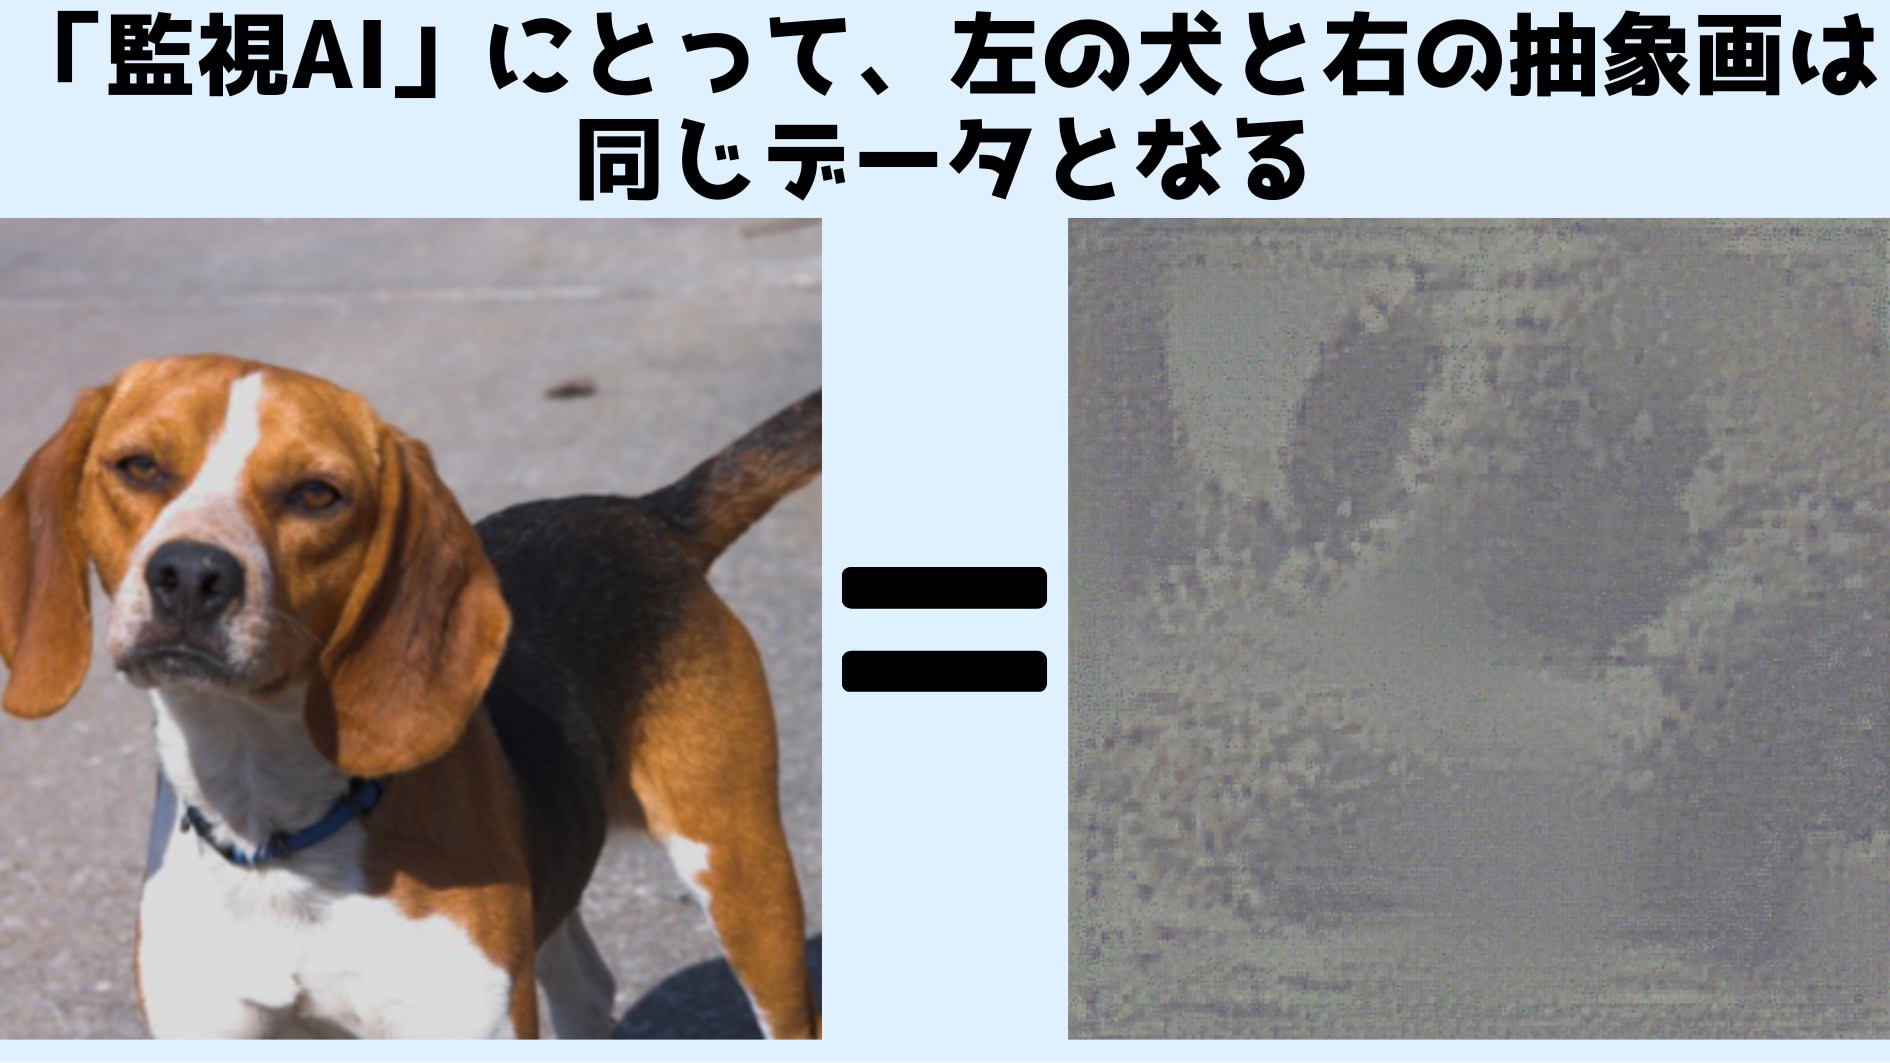 監視ソフトは犬の写真と抽象画を同じと認識していた